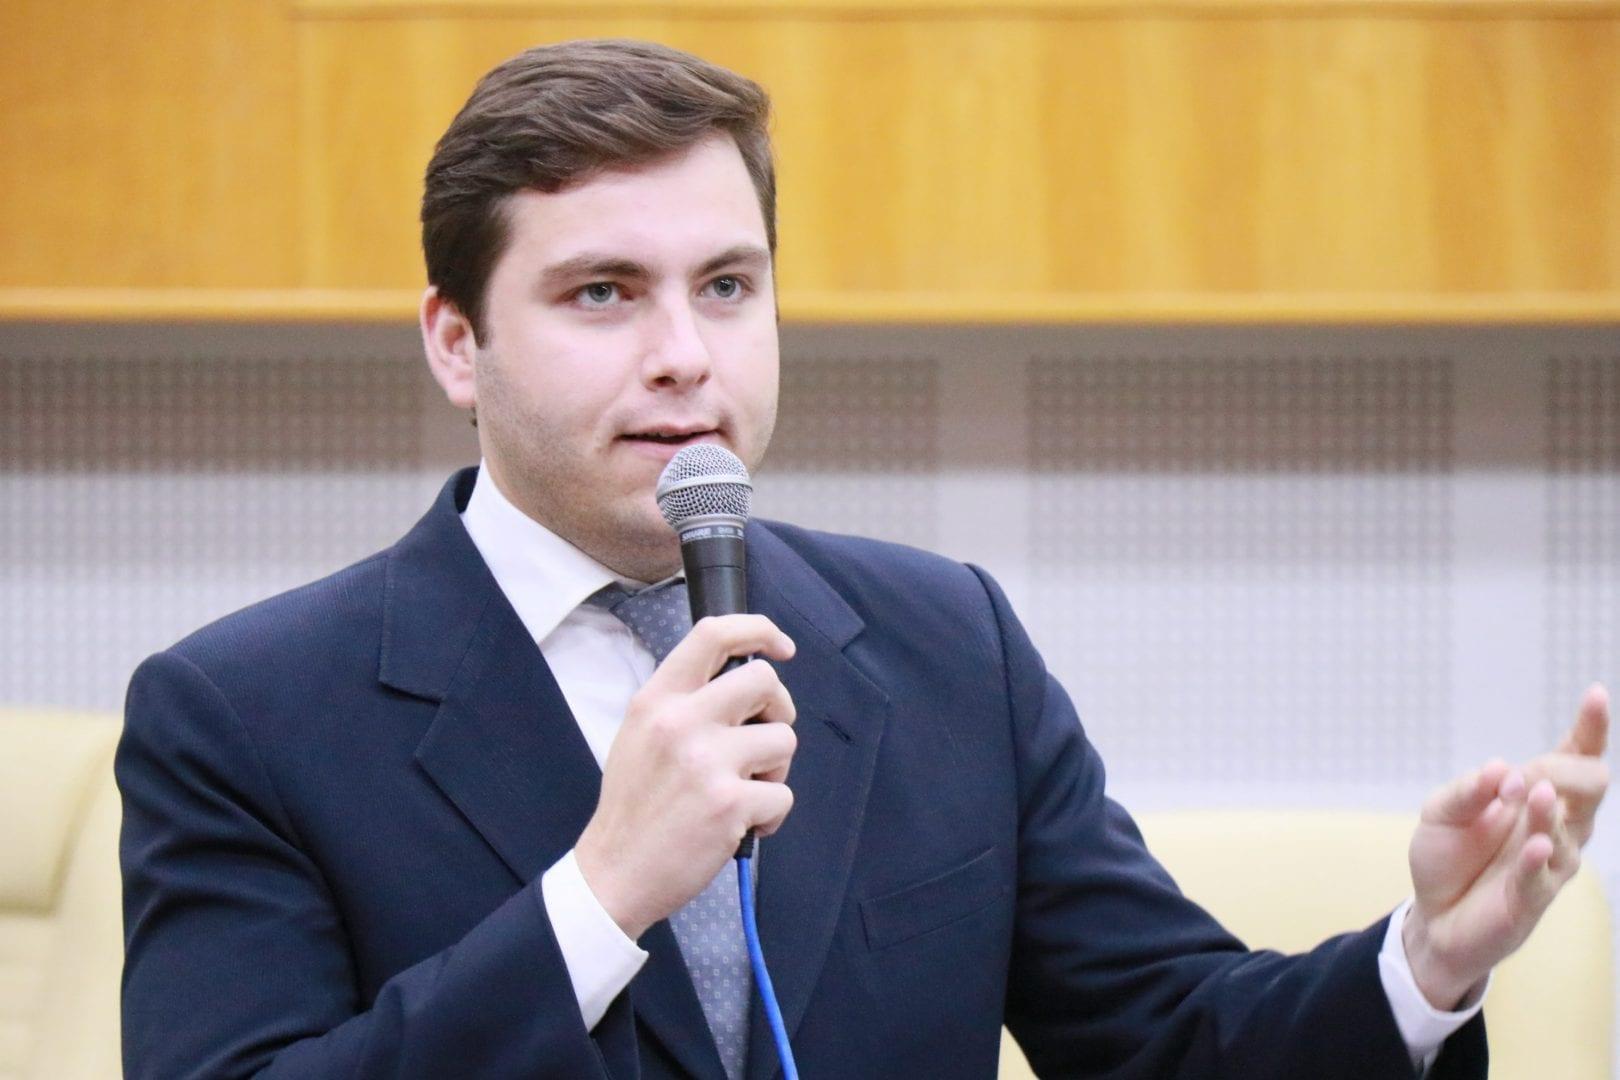 Apenas um vereador vota contra empréstimo de R$ 780 mi da Prefeitura de Goiânia